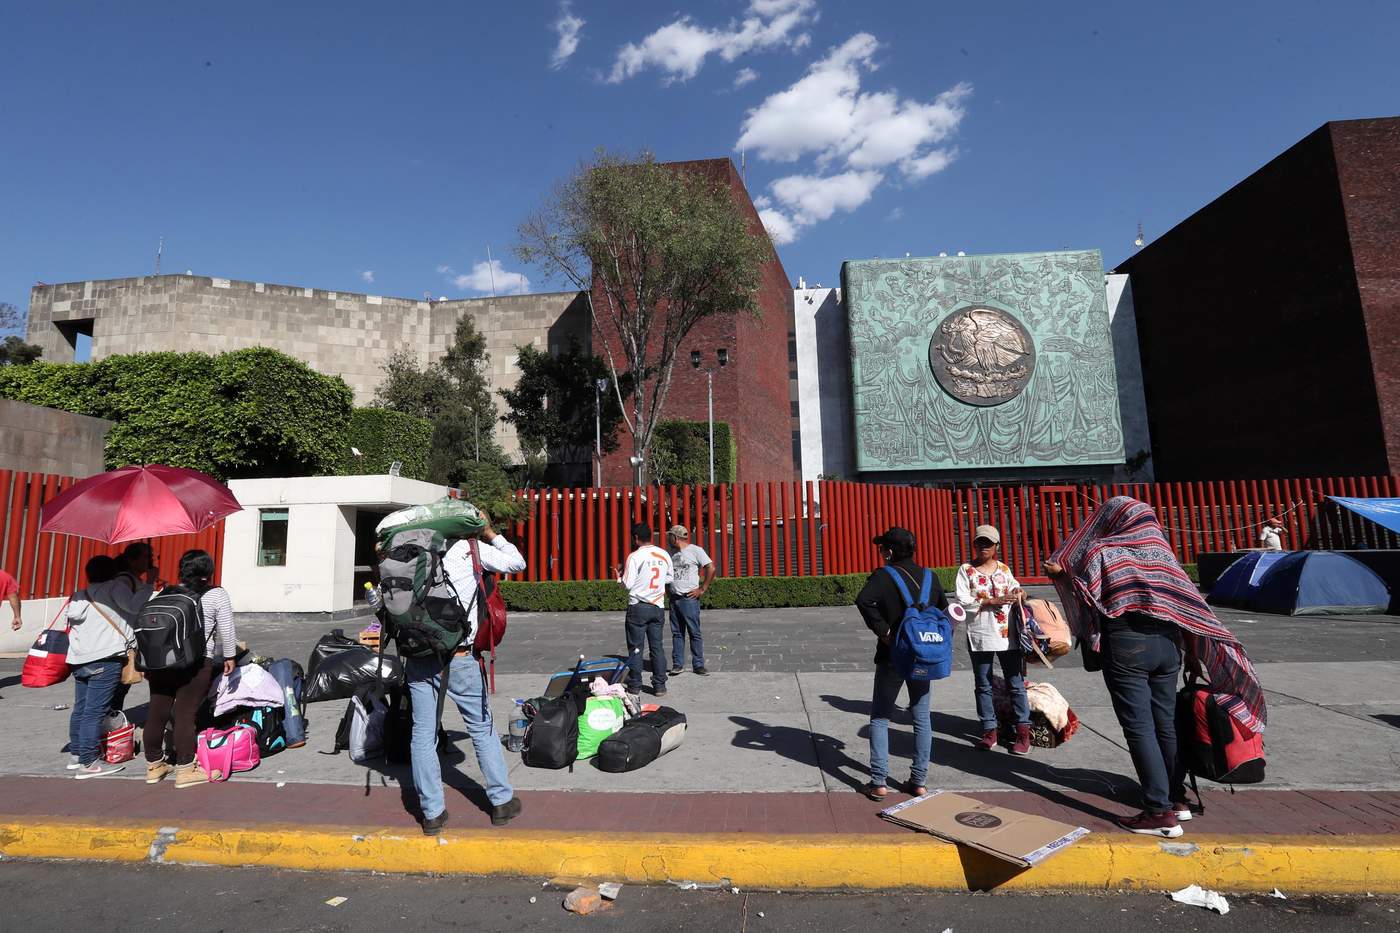 Los profesores, provenientes principalmente de Oaxaca, exigen la abrogación de la reforma educativa aprobada en 2013. (EL UNIVERSAL)